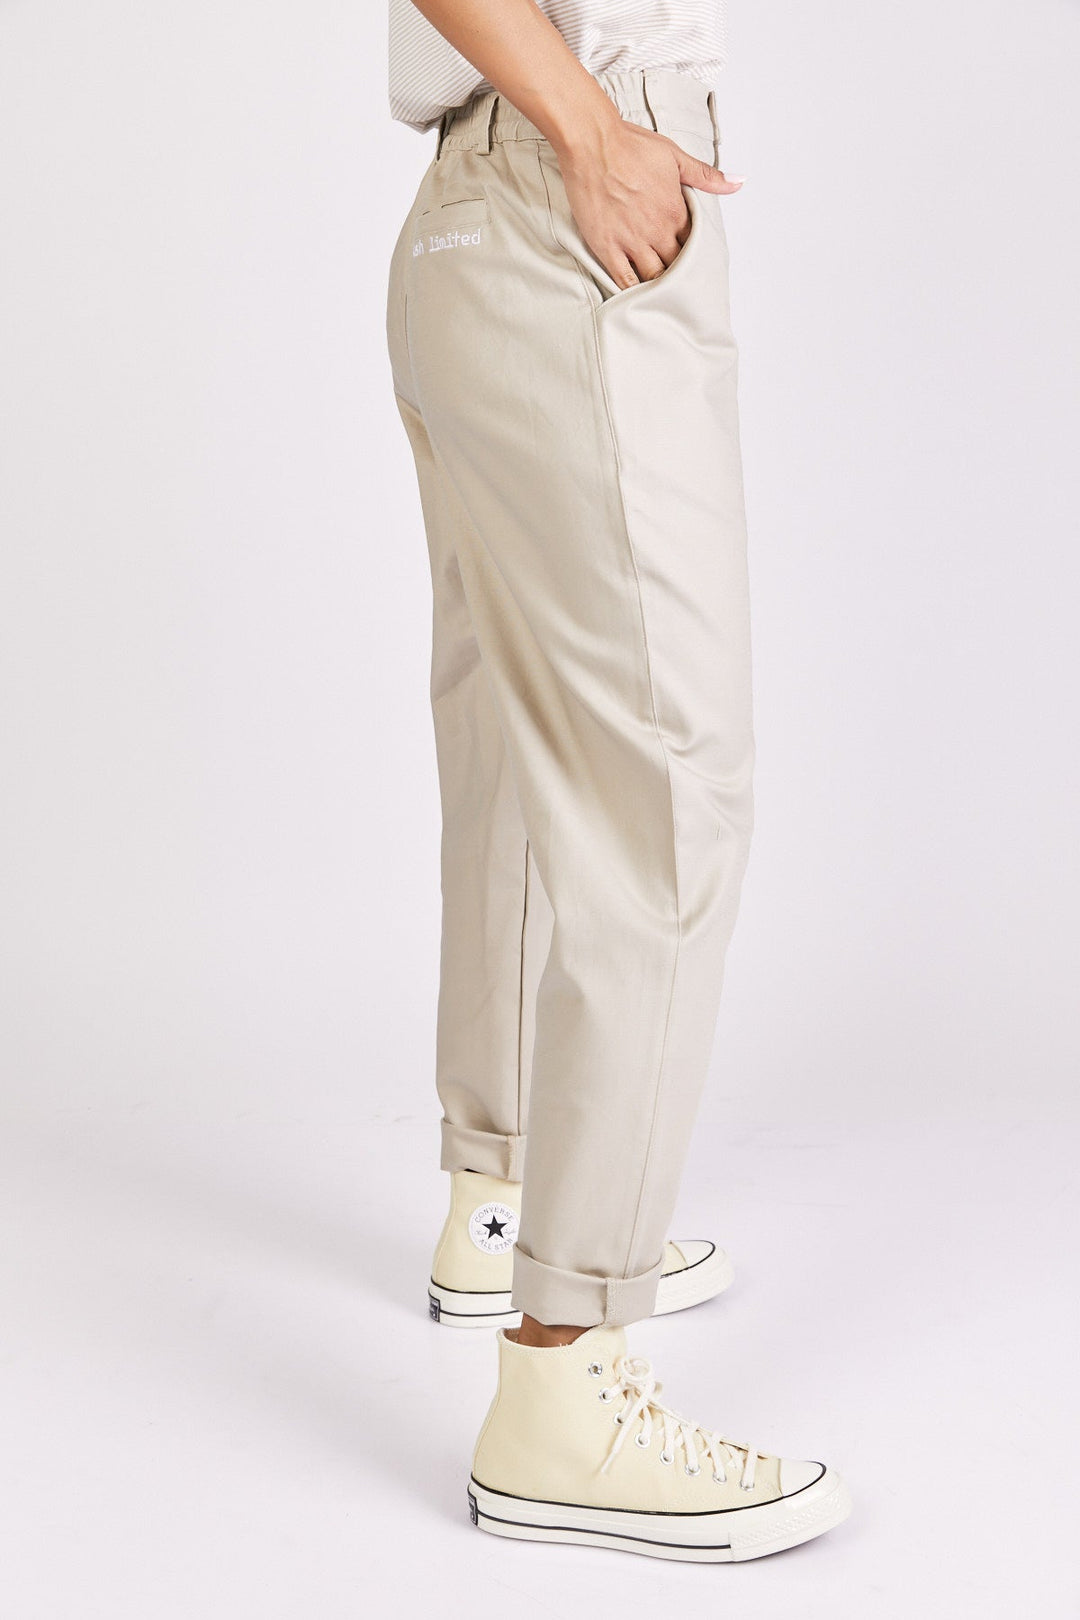 מכנסיים גבוהים פיקסל לוגו בצבע אבן - Kesh Limited